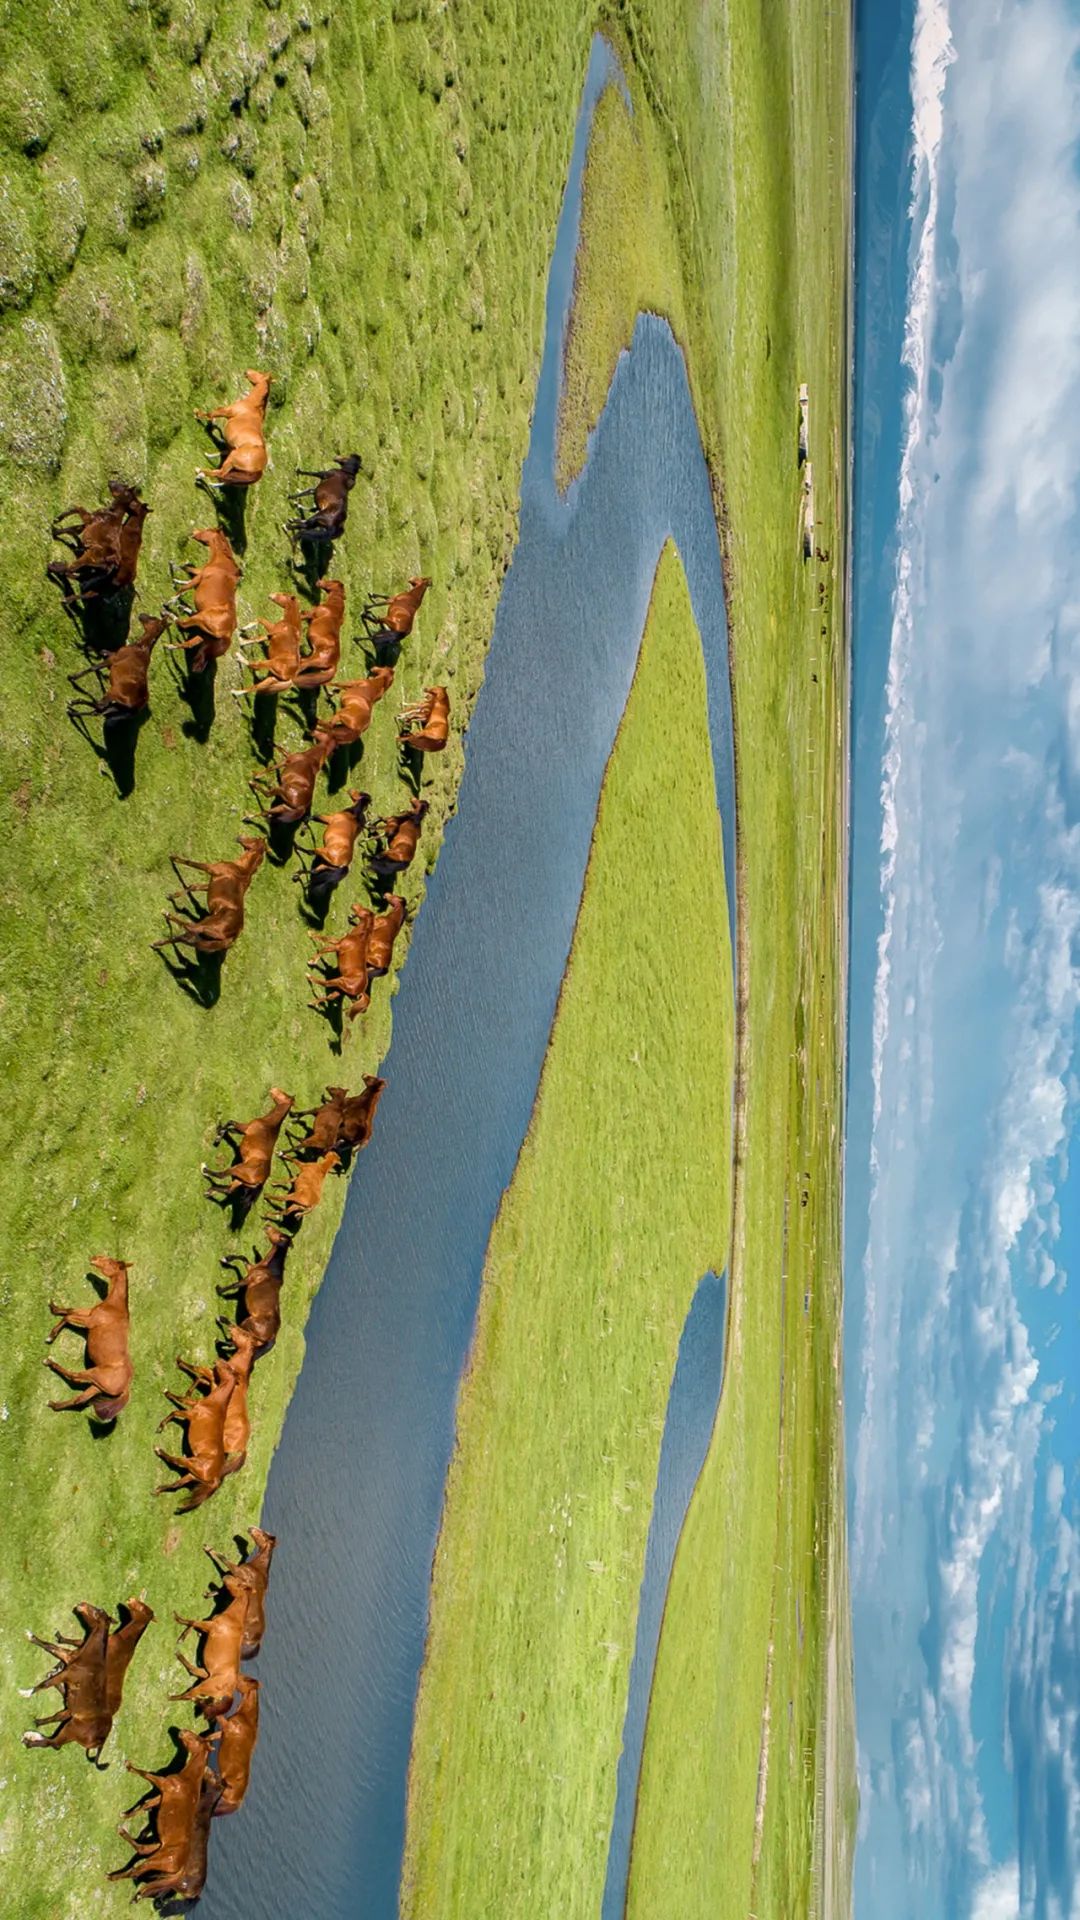 ▲ 群马奔腾在河畔，伊犁的昭苏是著名的“天马之乡”，盛产骏马。摄影/赖宇宁